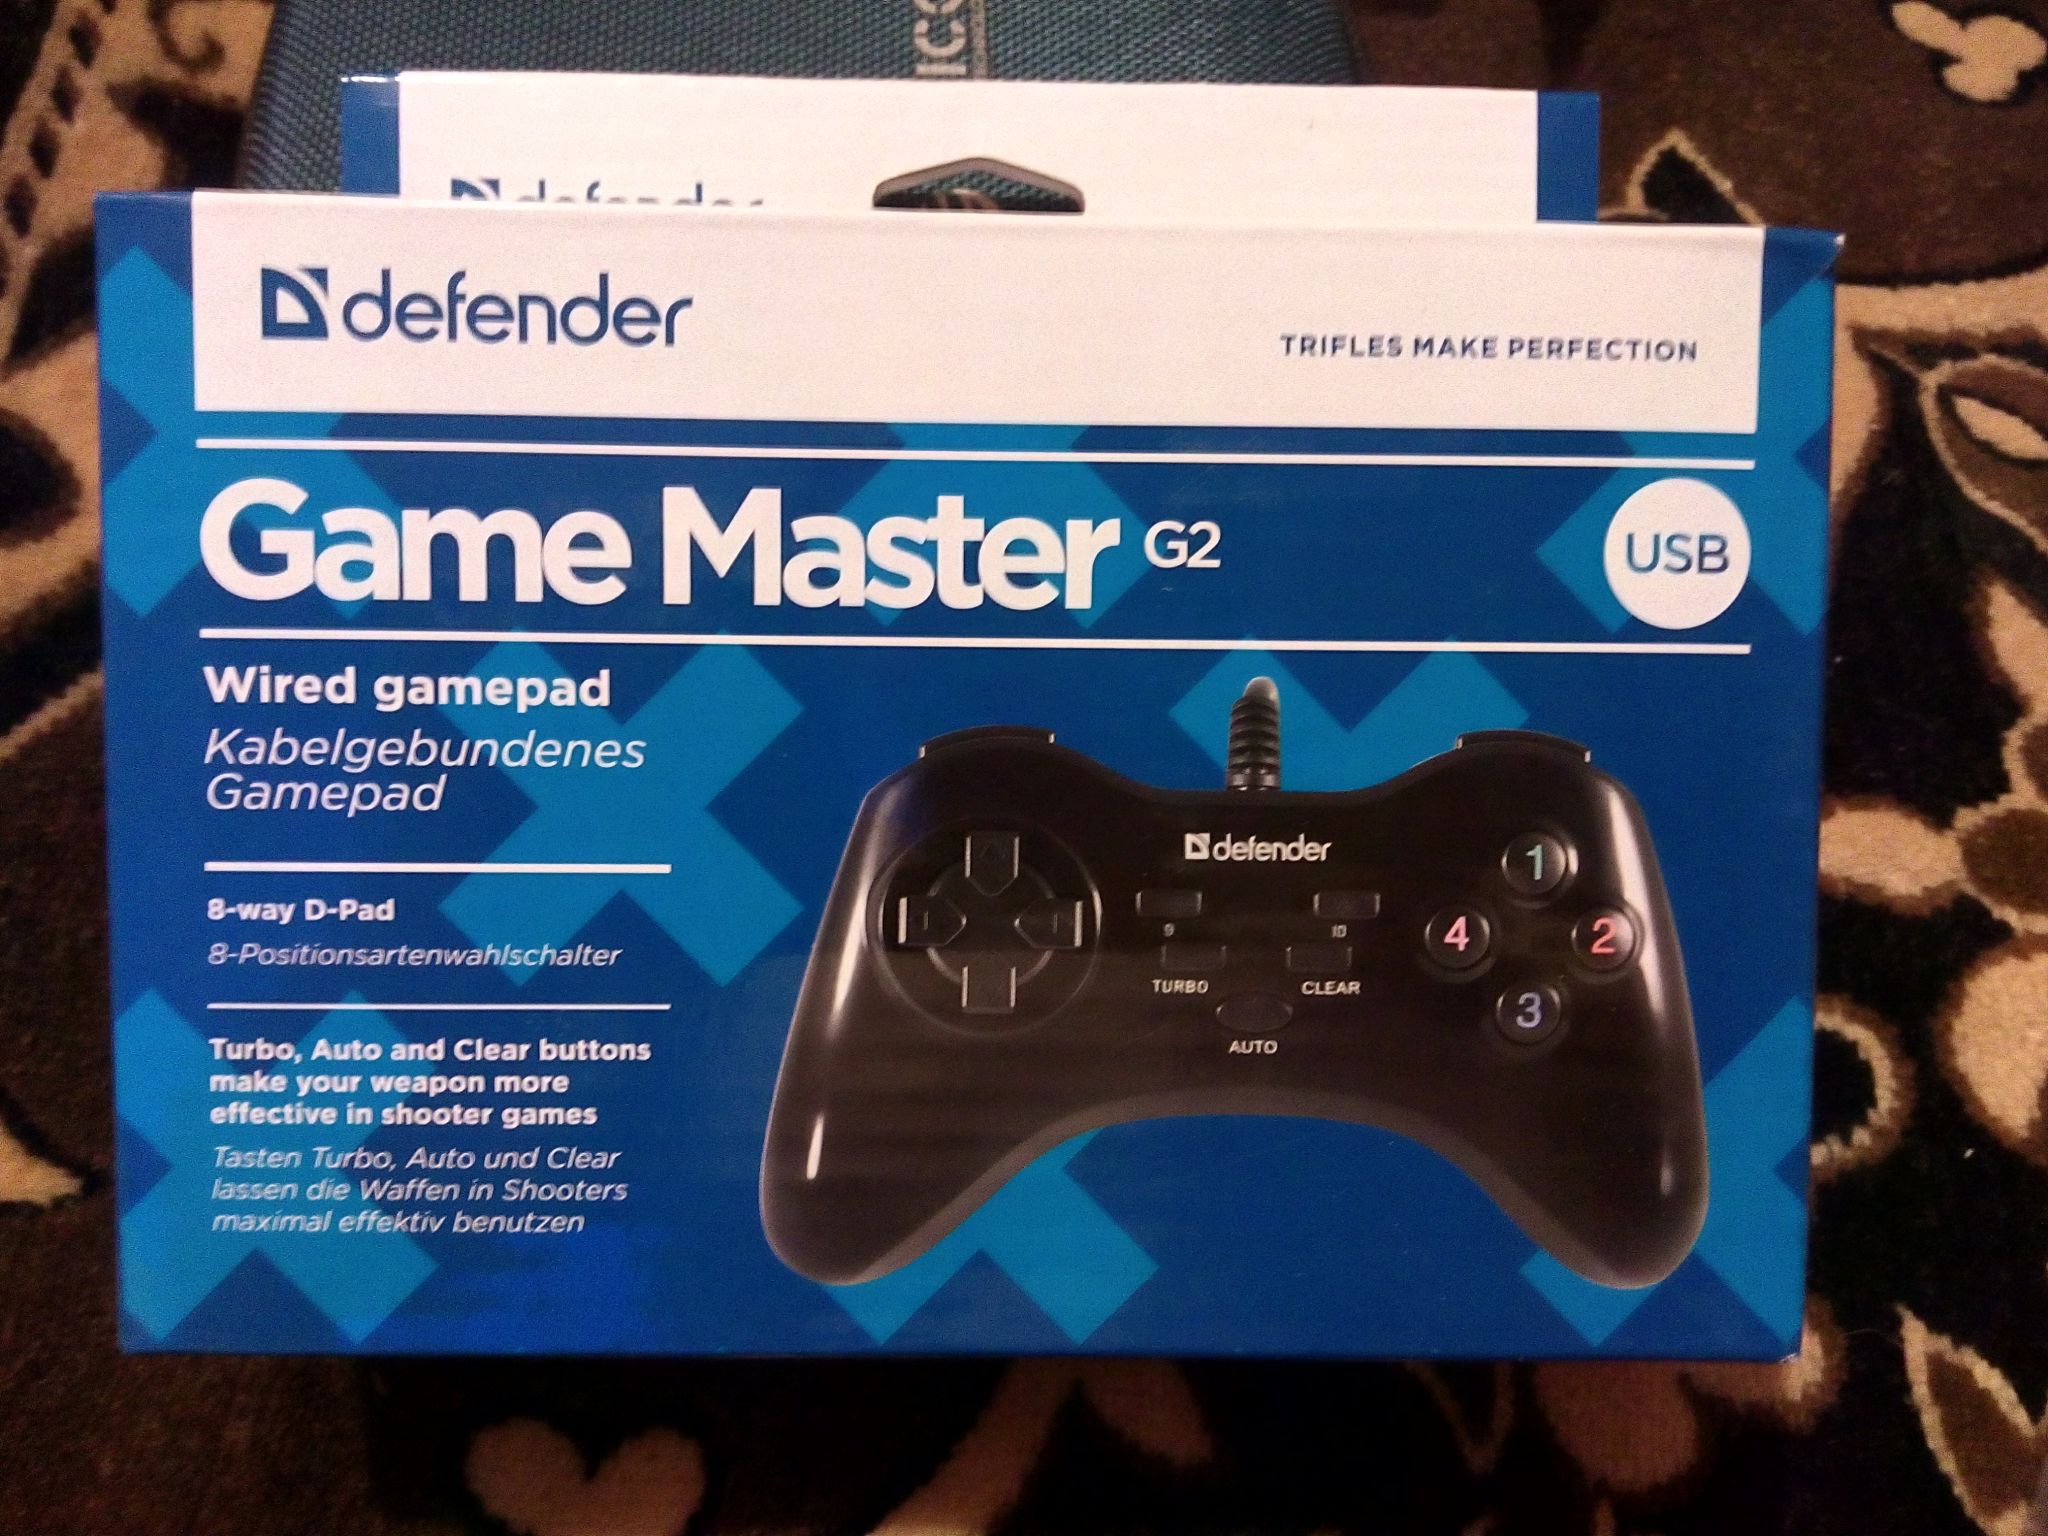 Defender game g2. Джойстик Defender game Master g2. Геймпад game Master g2 64258 Defender. Дефендер мастер g2. Геймпад Defender mobile Master.